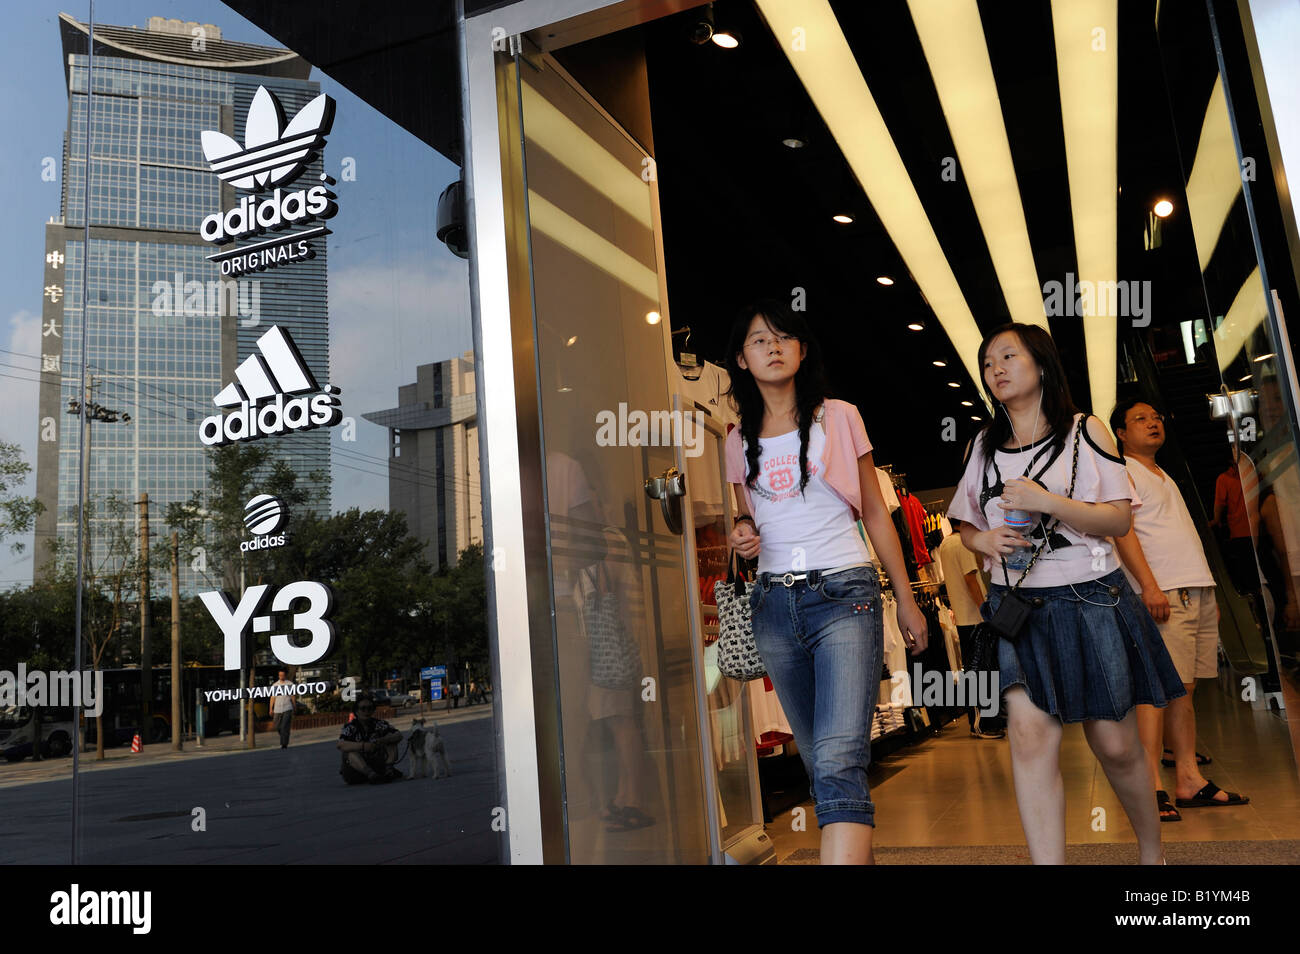 Progreso Diploma Sada La mayor salida de Adidas en el mundo abierto en Beijing, China.  06-Jul-2008 Fotografía de stock - Alamy